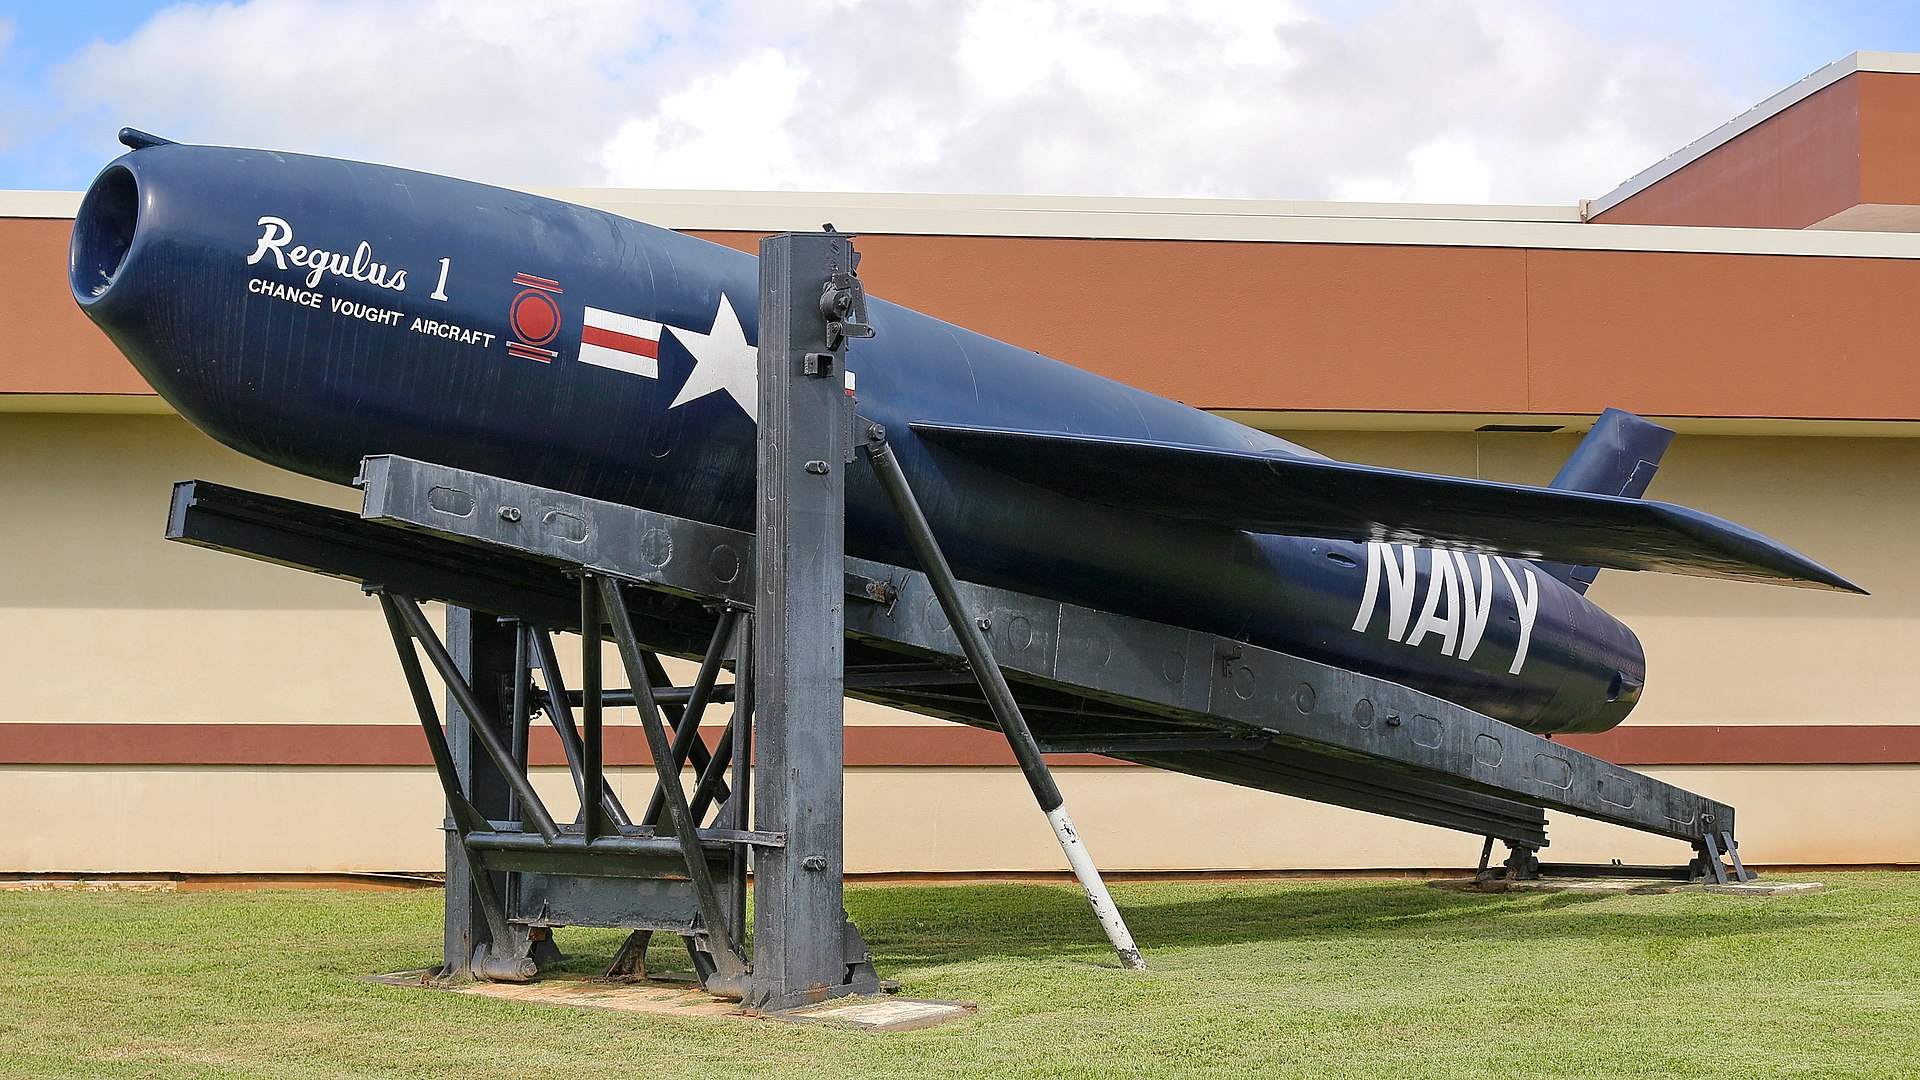 Regulus missile on display in Hawaii.